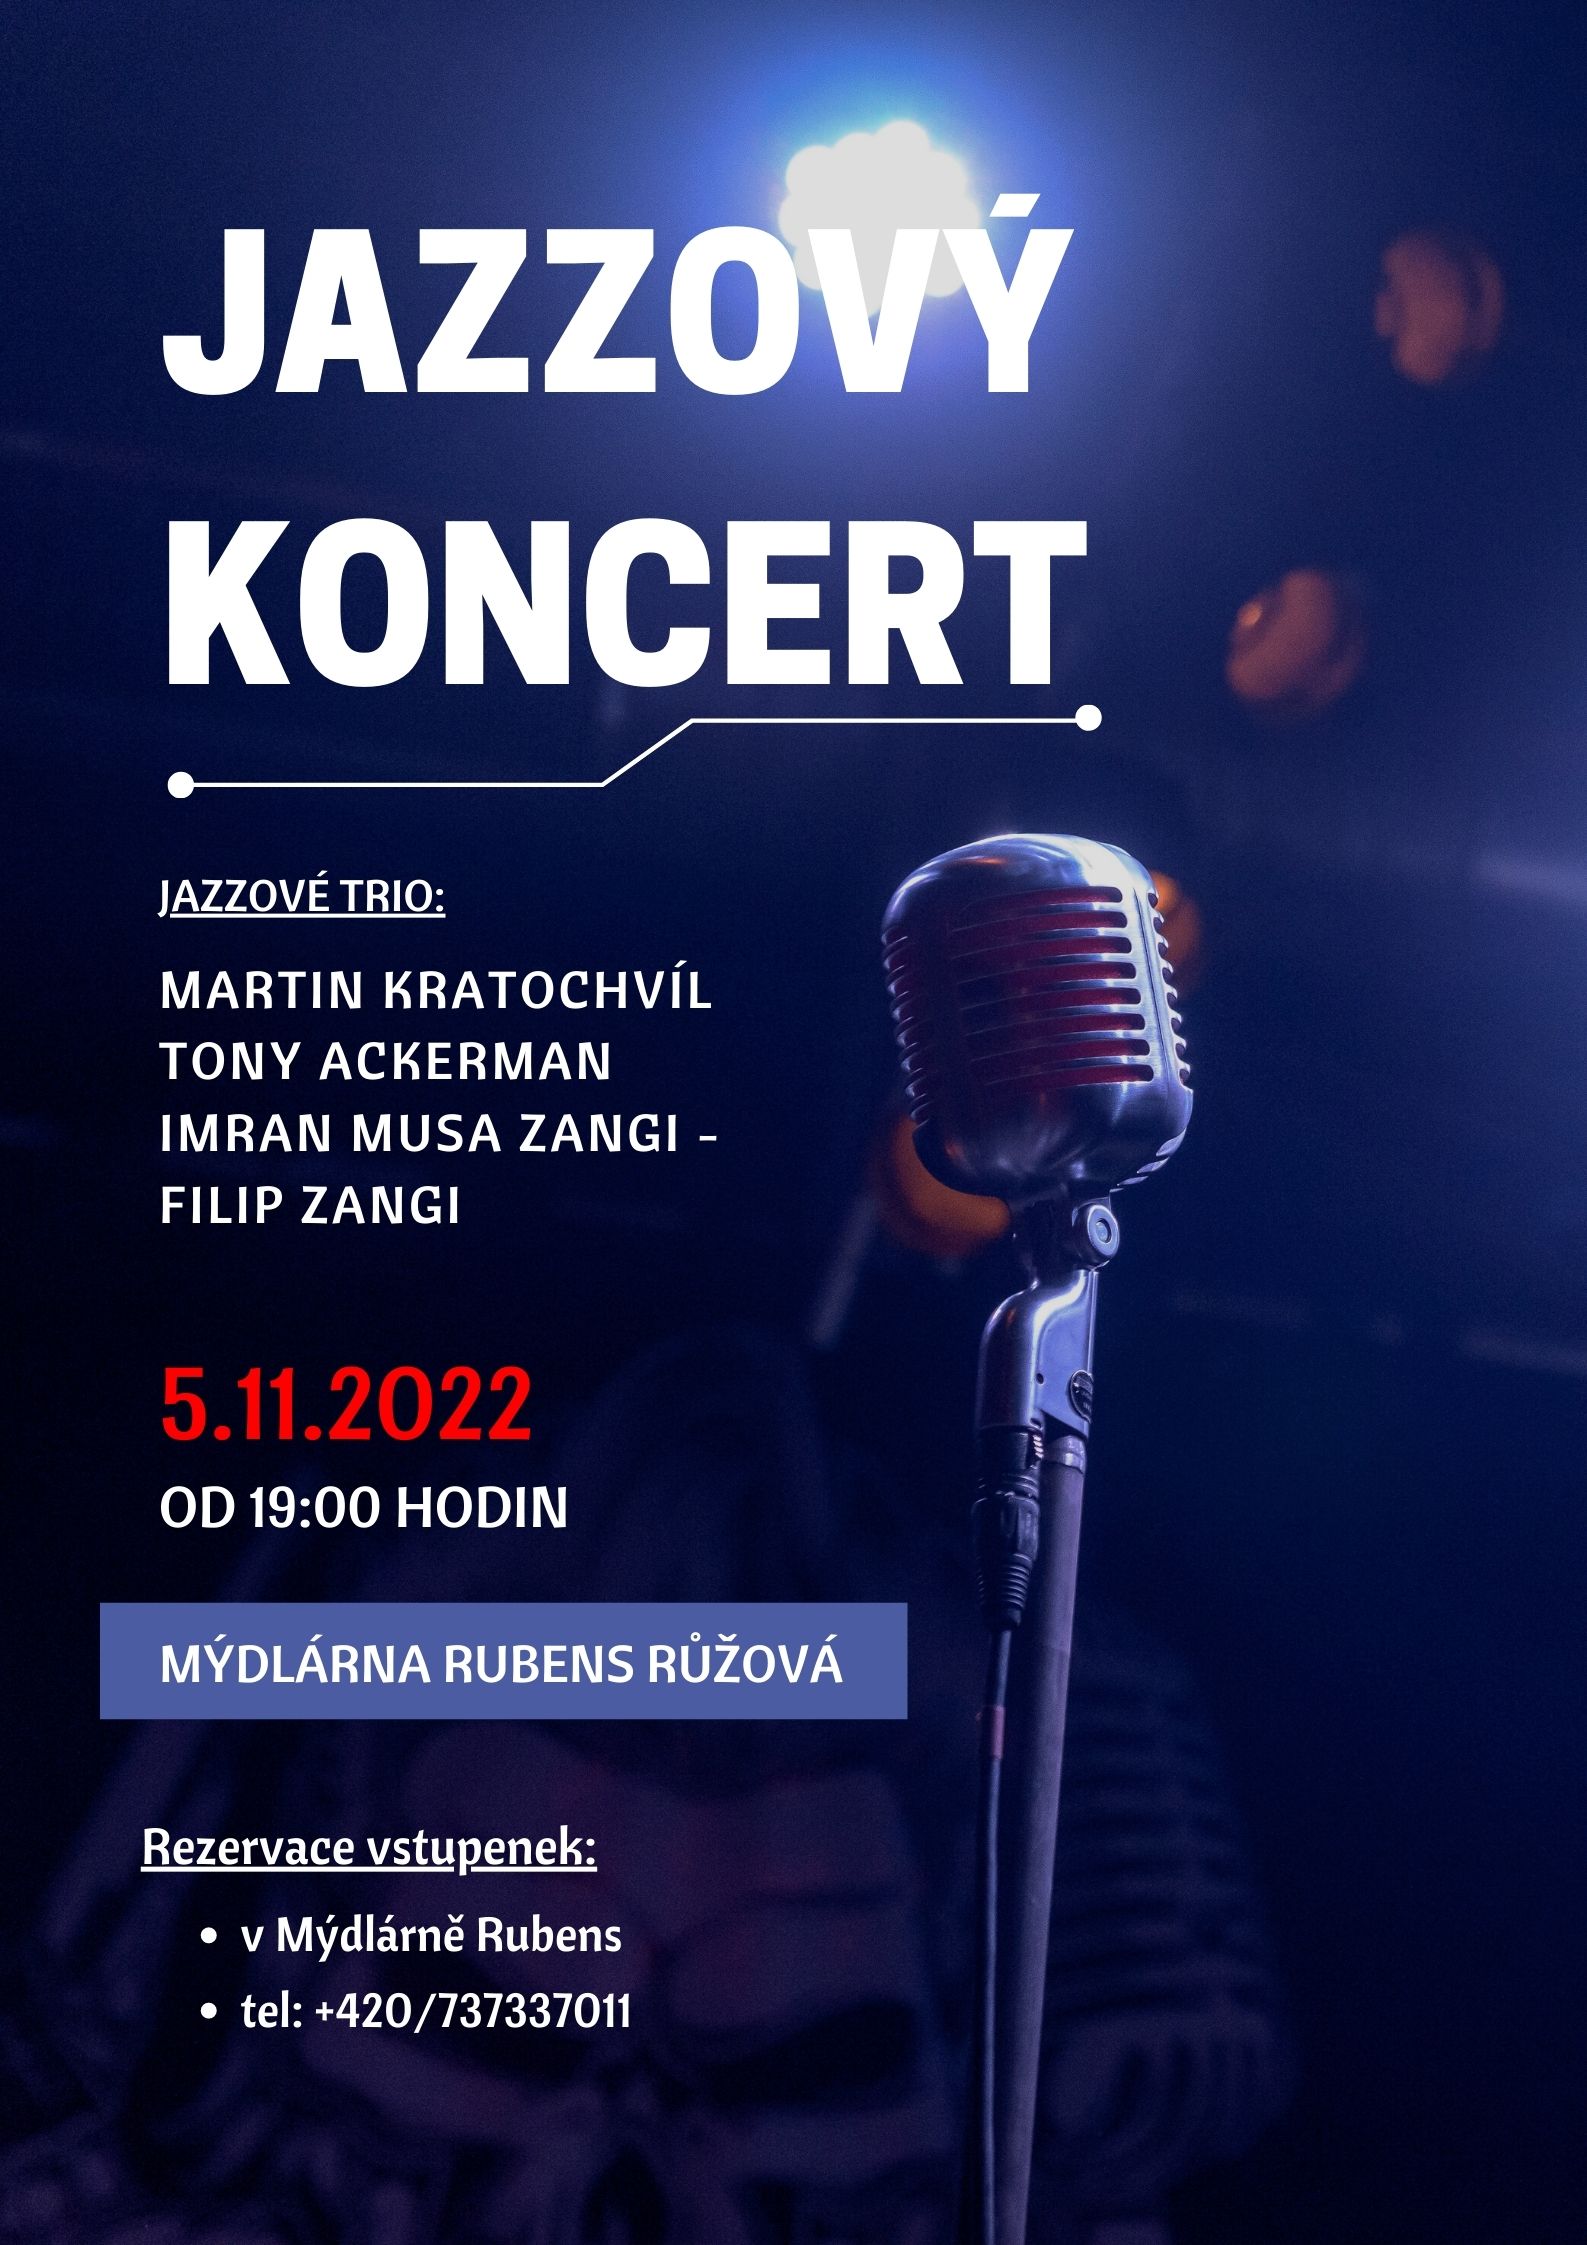 Jazzový koncert 06-11-2021 od 19:00 hod.